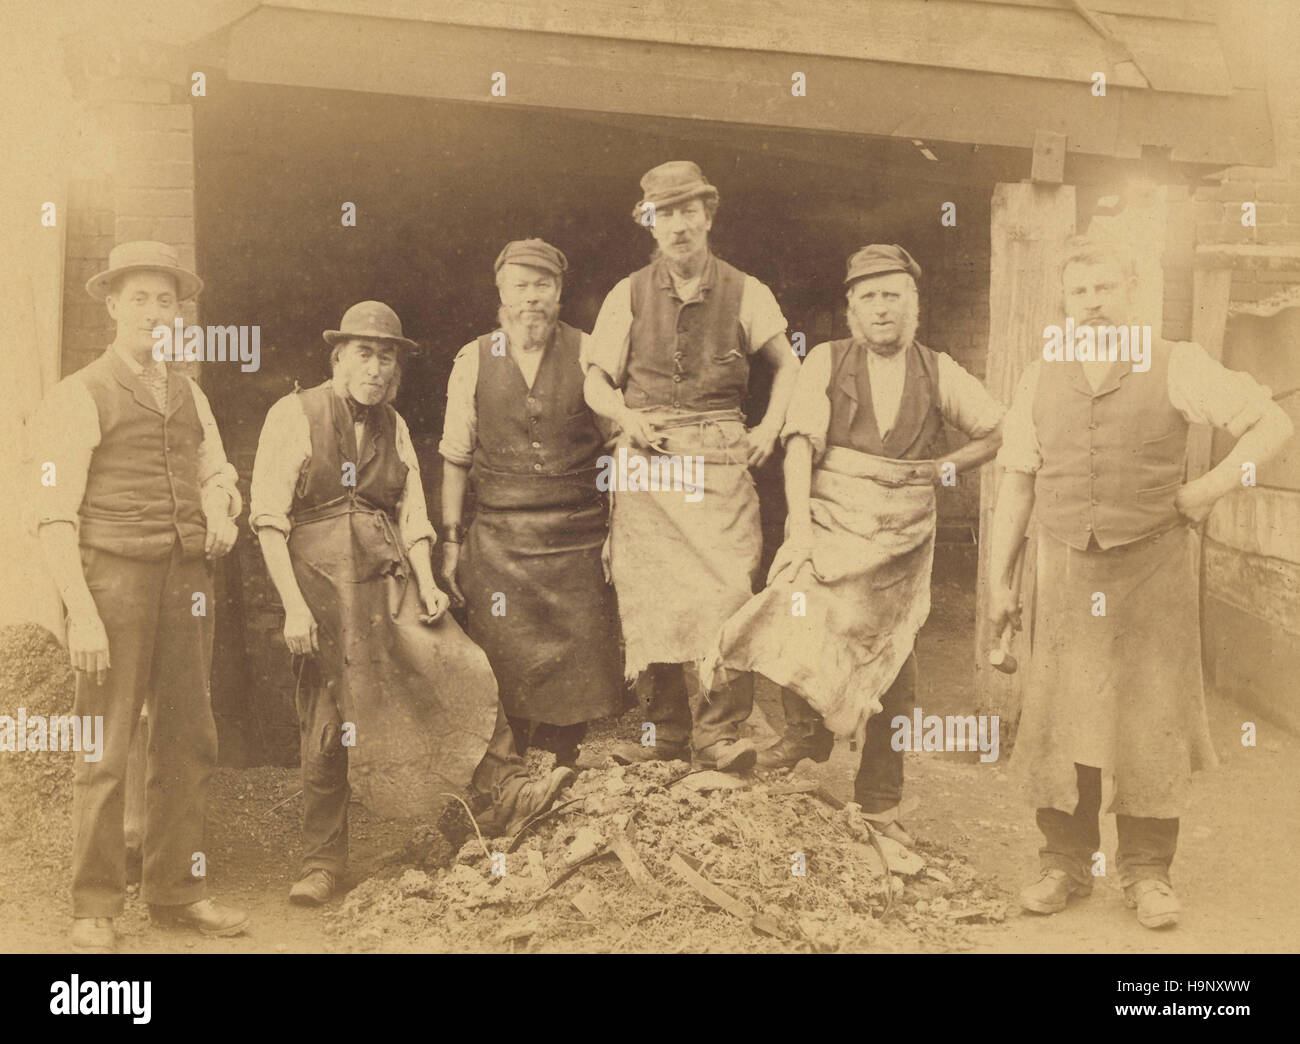 Historisches Archiv Bild der arbeitende Männer in Crookham, Berkshire 1900. Möglicherweise Wheelwrights oder Tischler Stockfoto